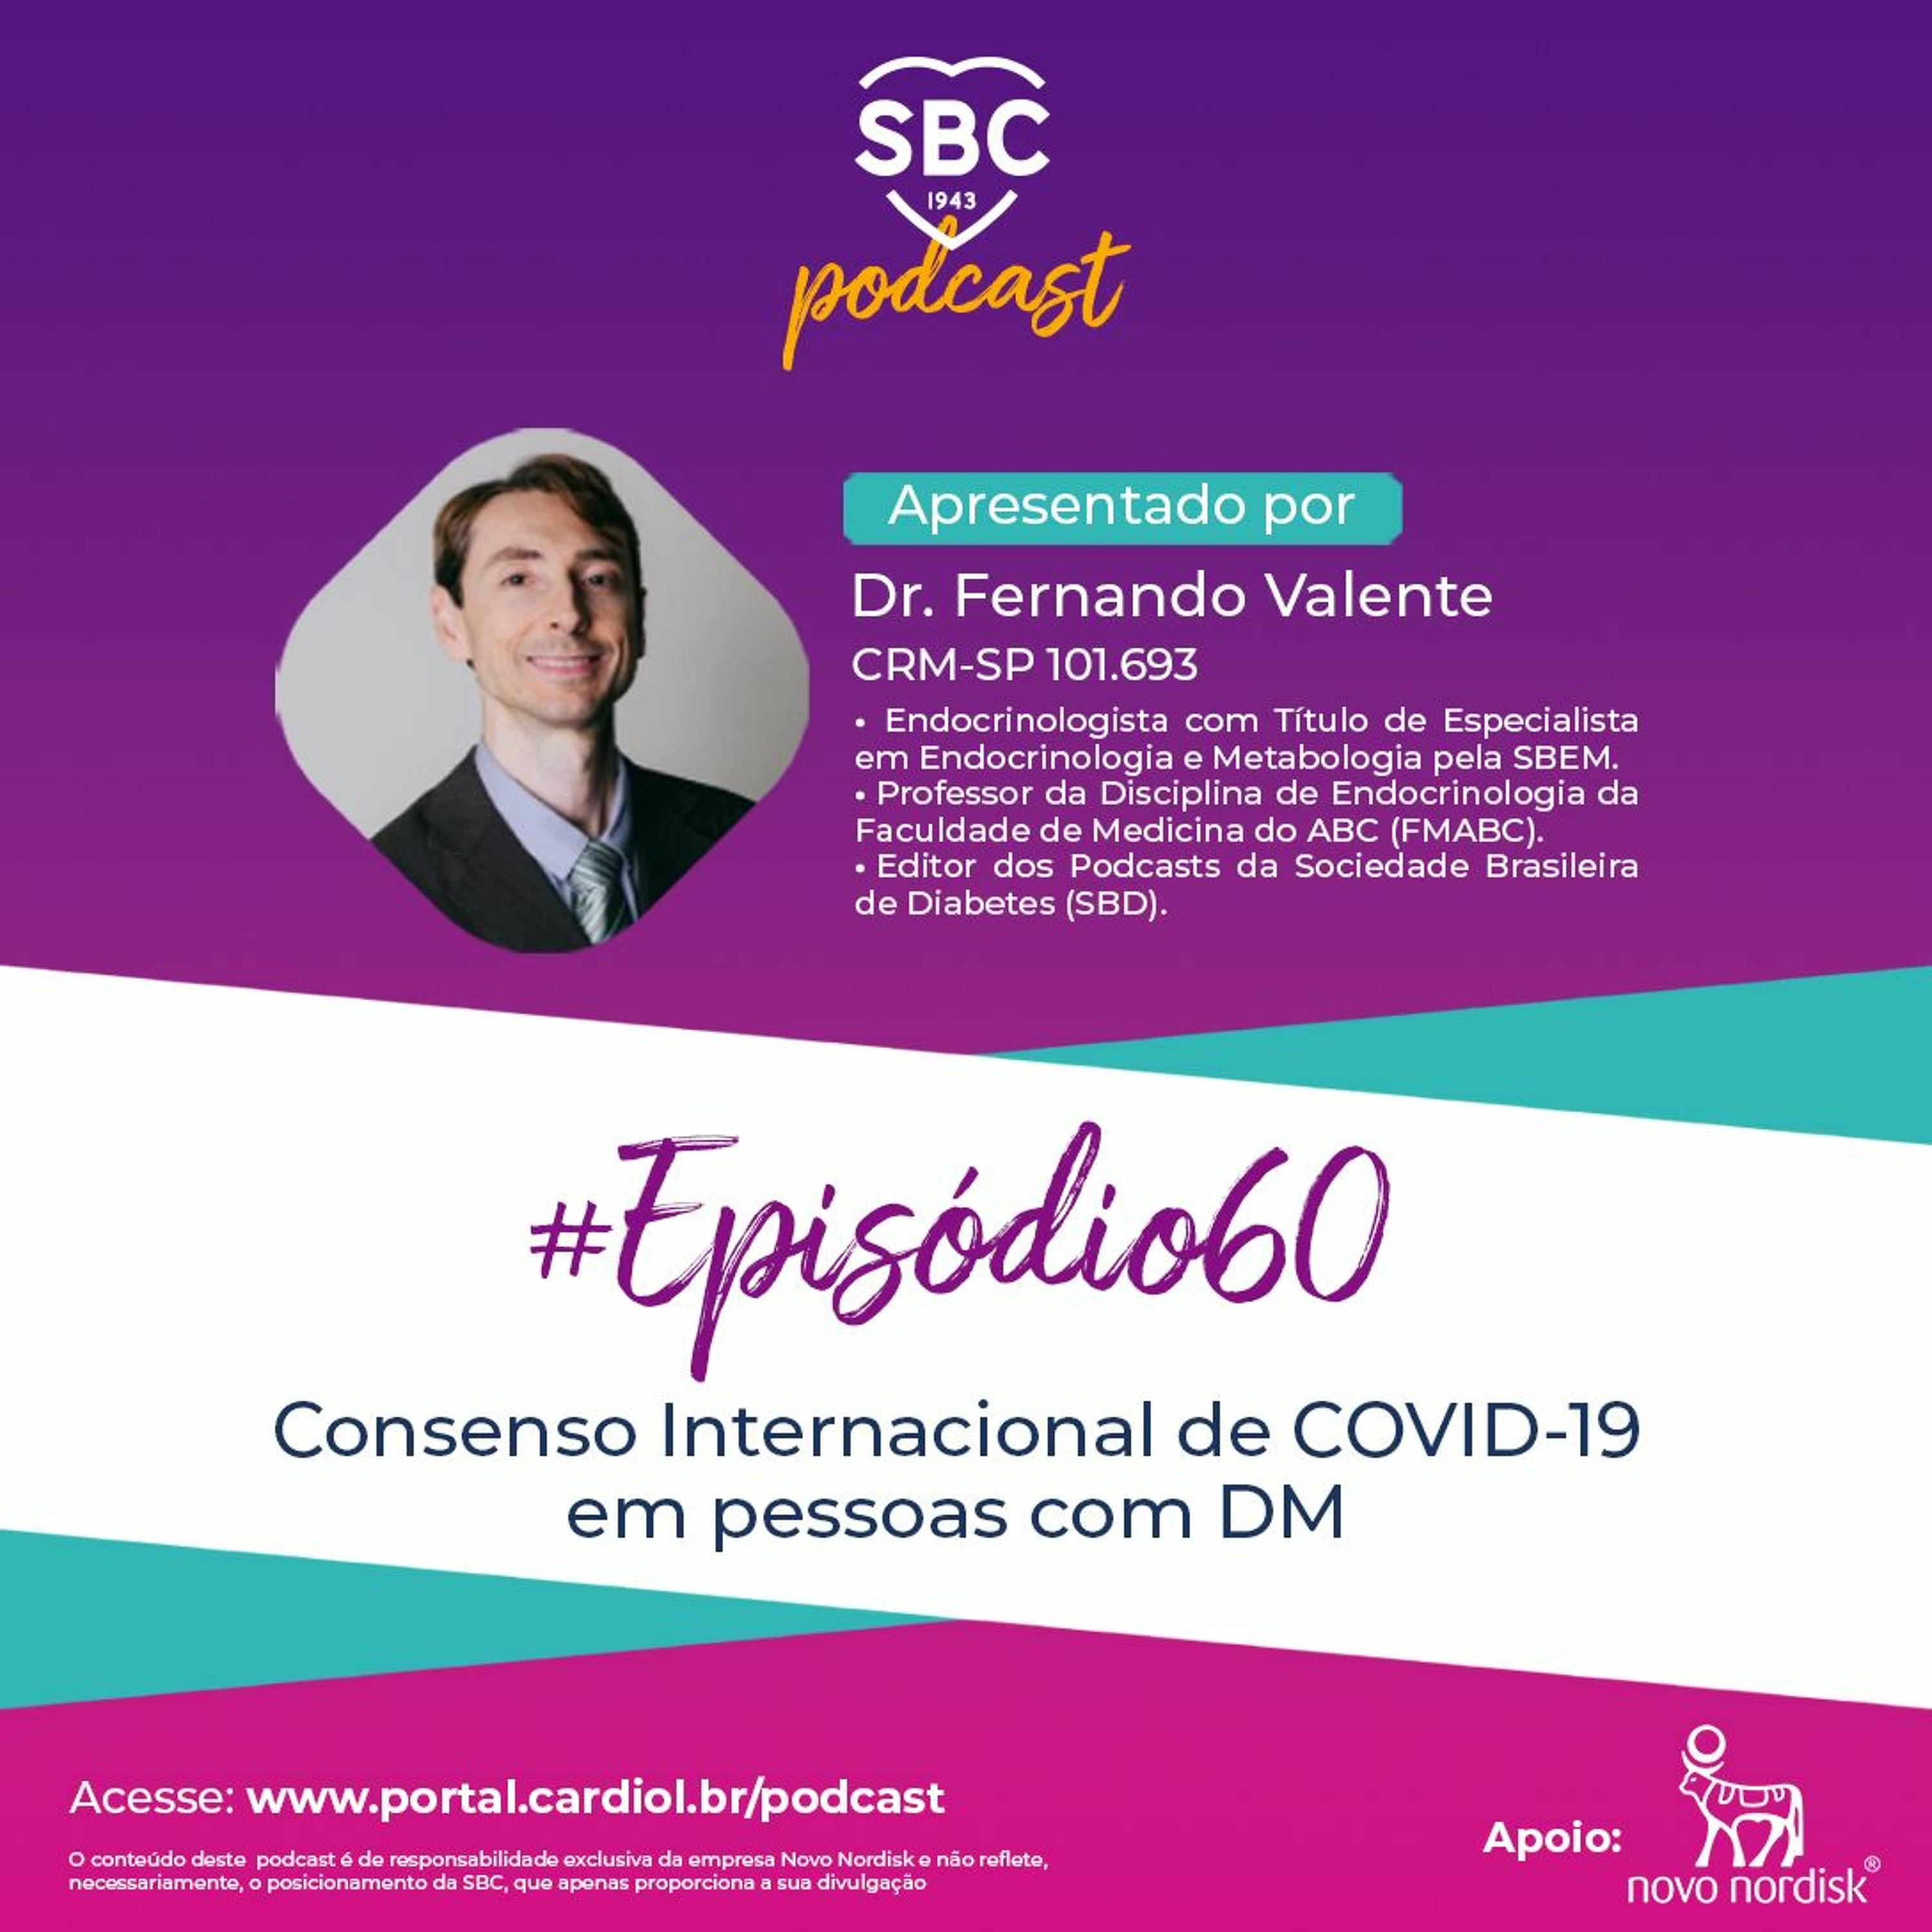 Neste episódio, o Dr. Fernando Valente abordará o Consenso Internacional de COVID-19 em pessoas com DM.